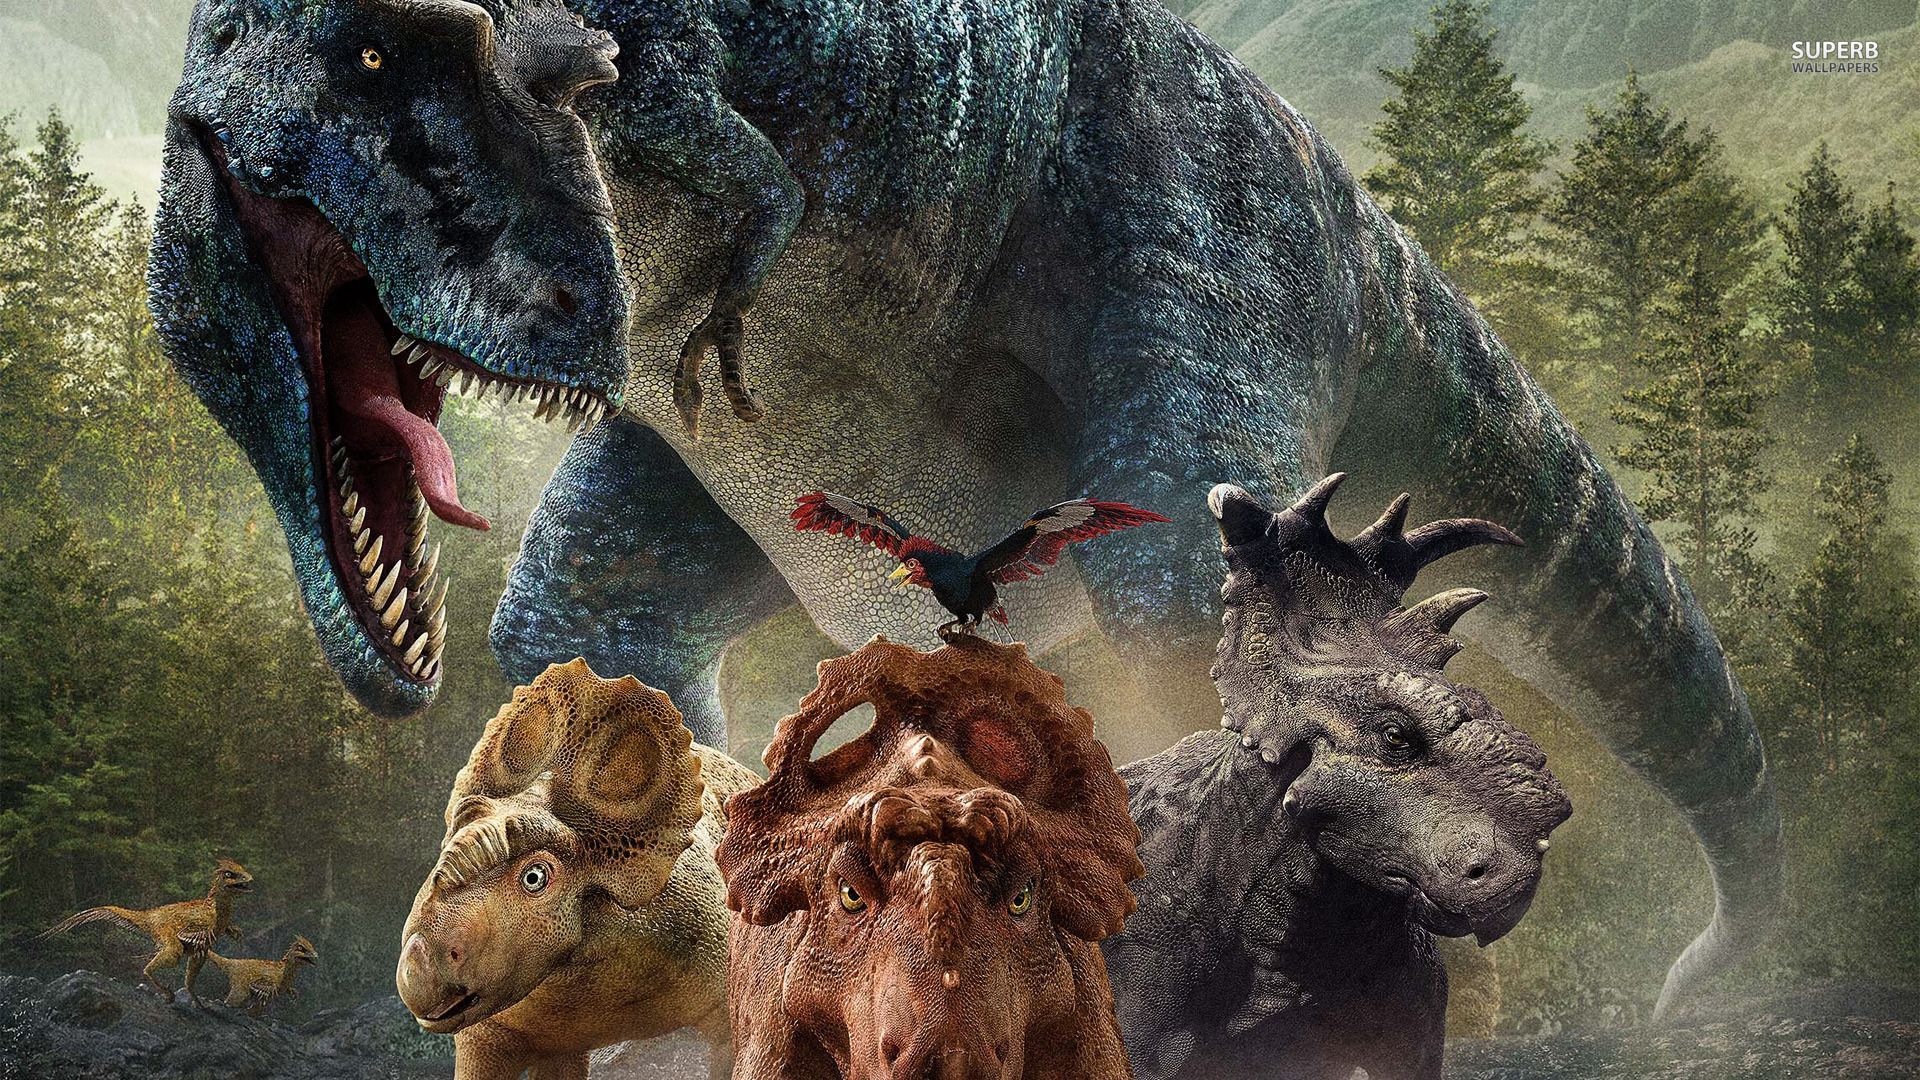 Walking Dinosaurs Movie Wallpaper. Walking with dinosaurs